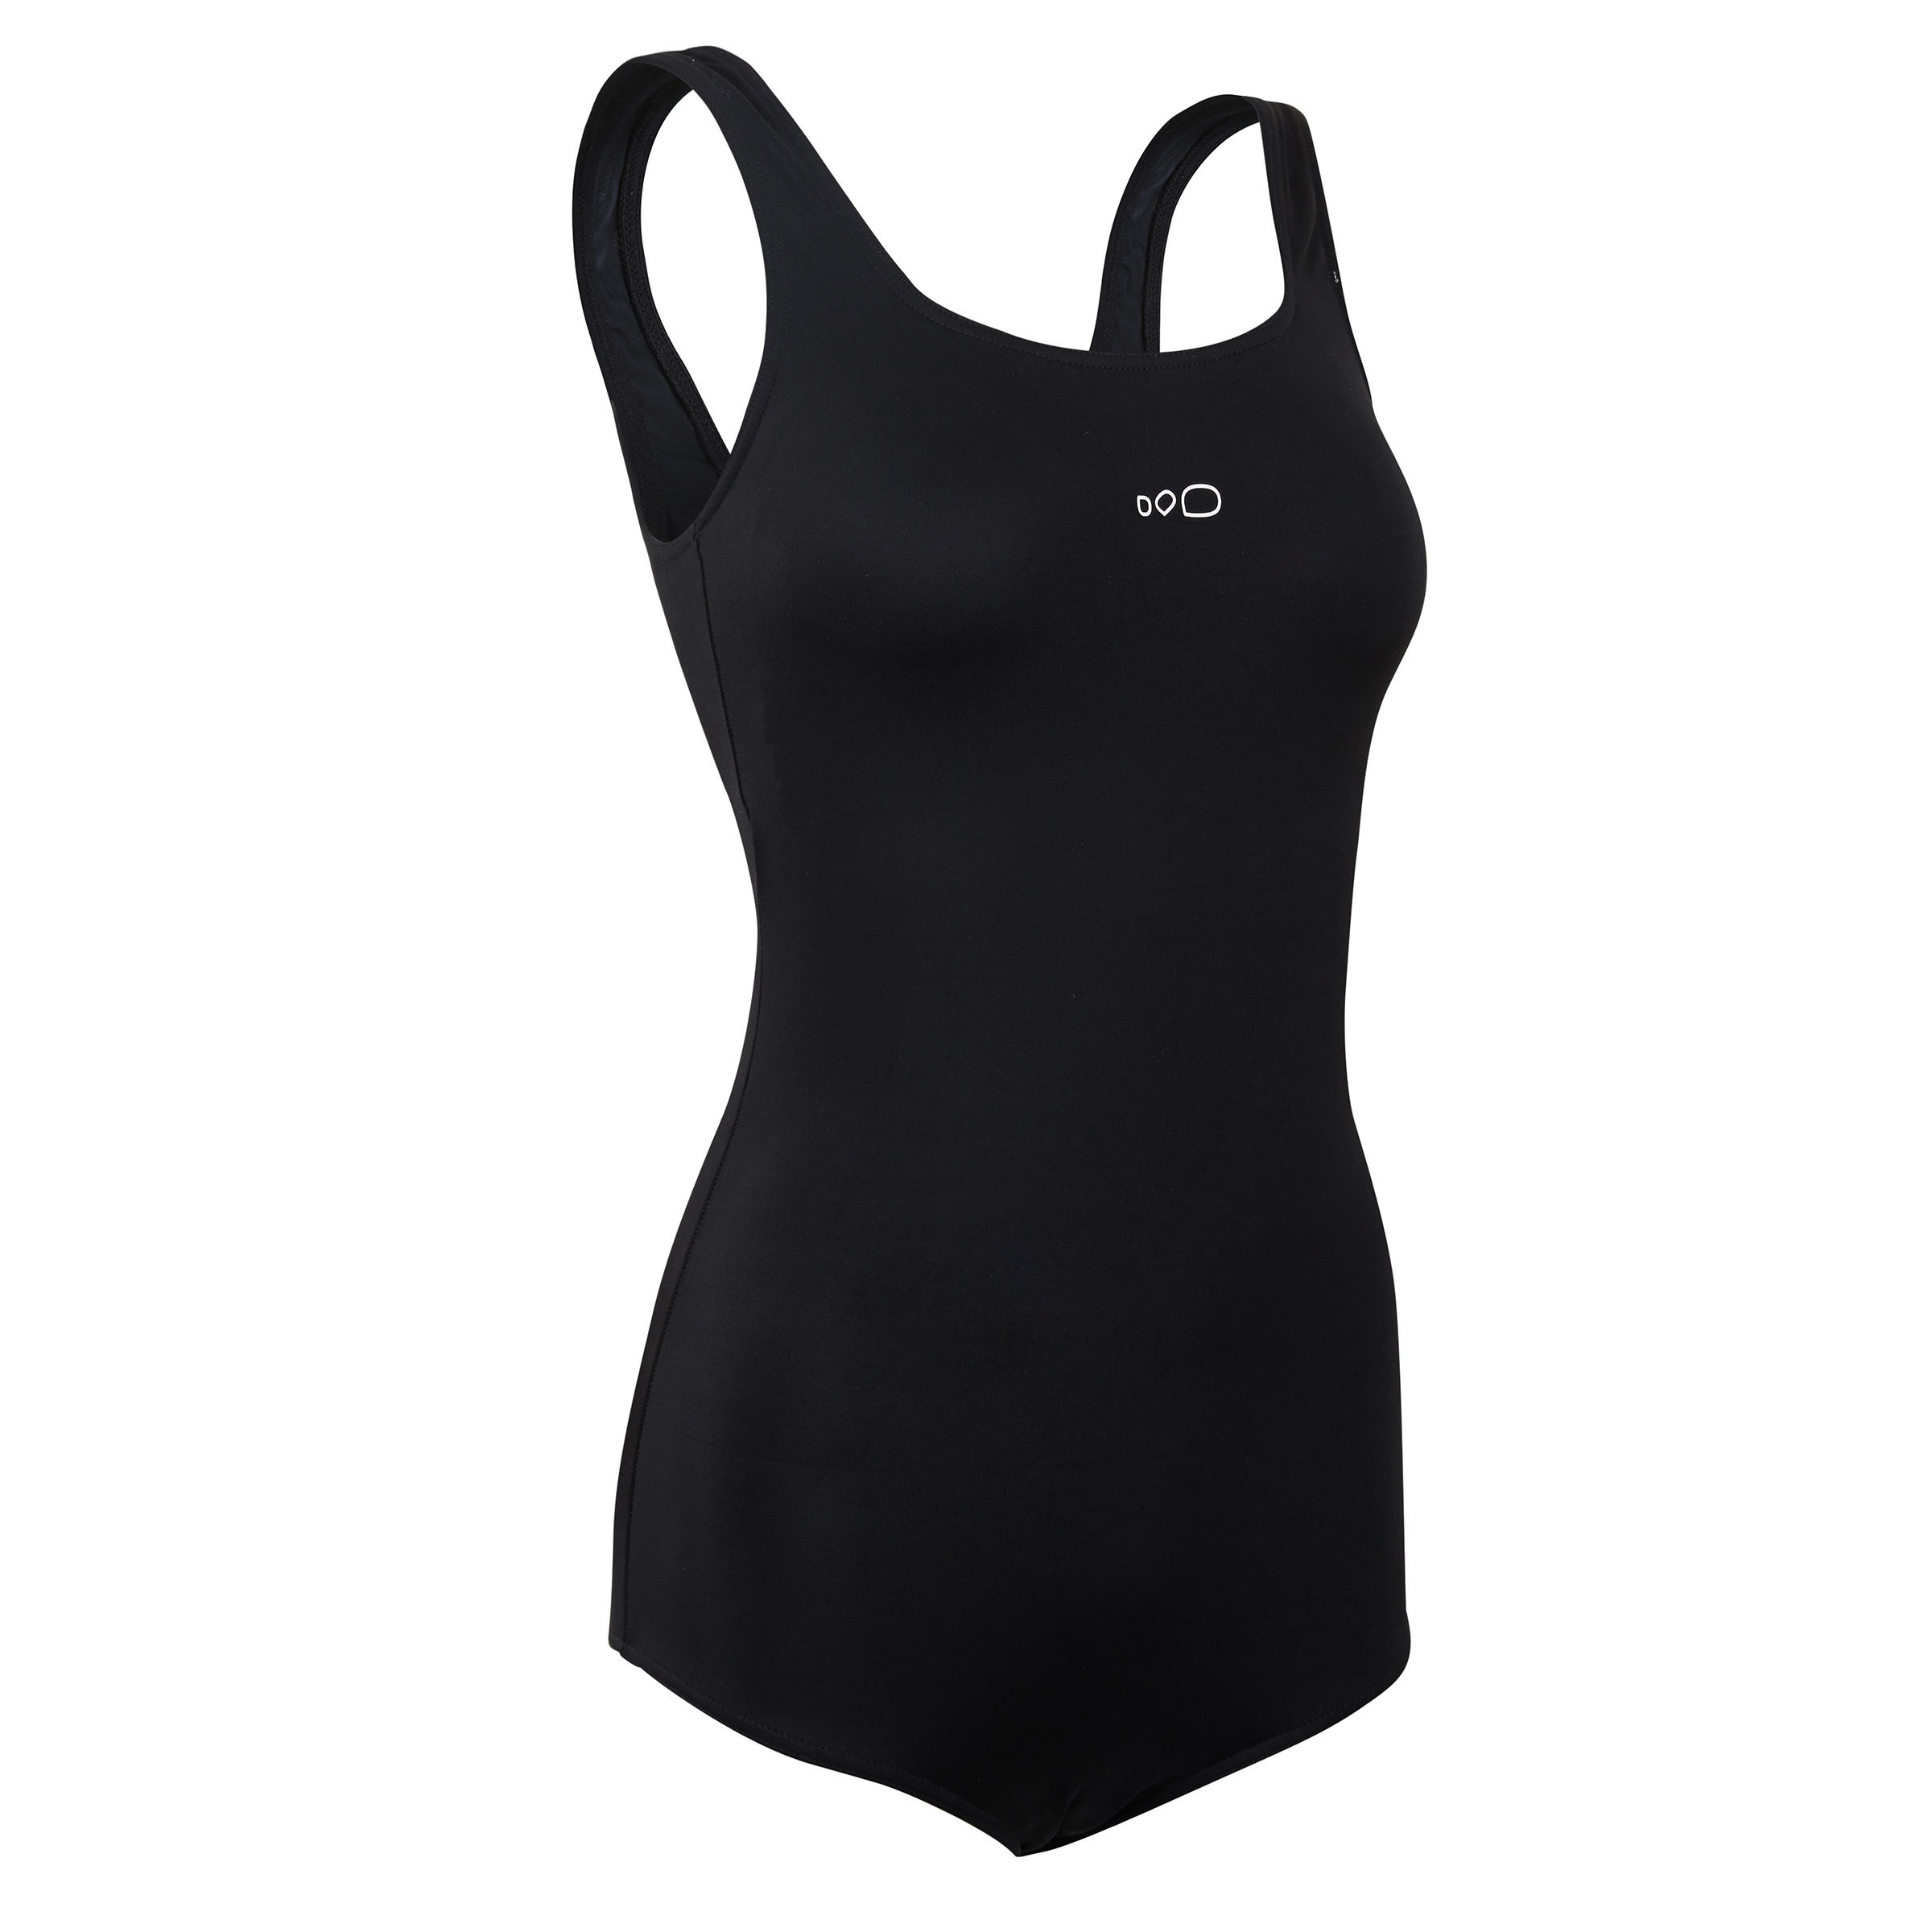 swimsuit for women decathlon